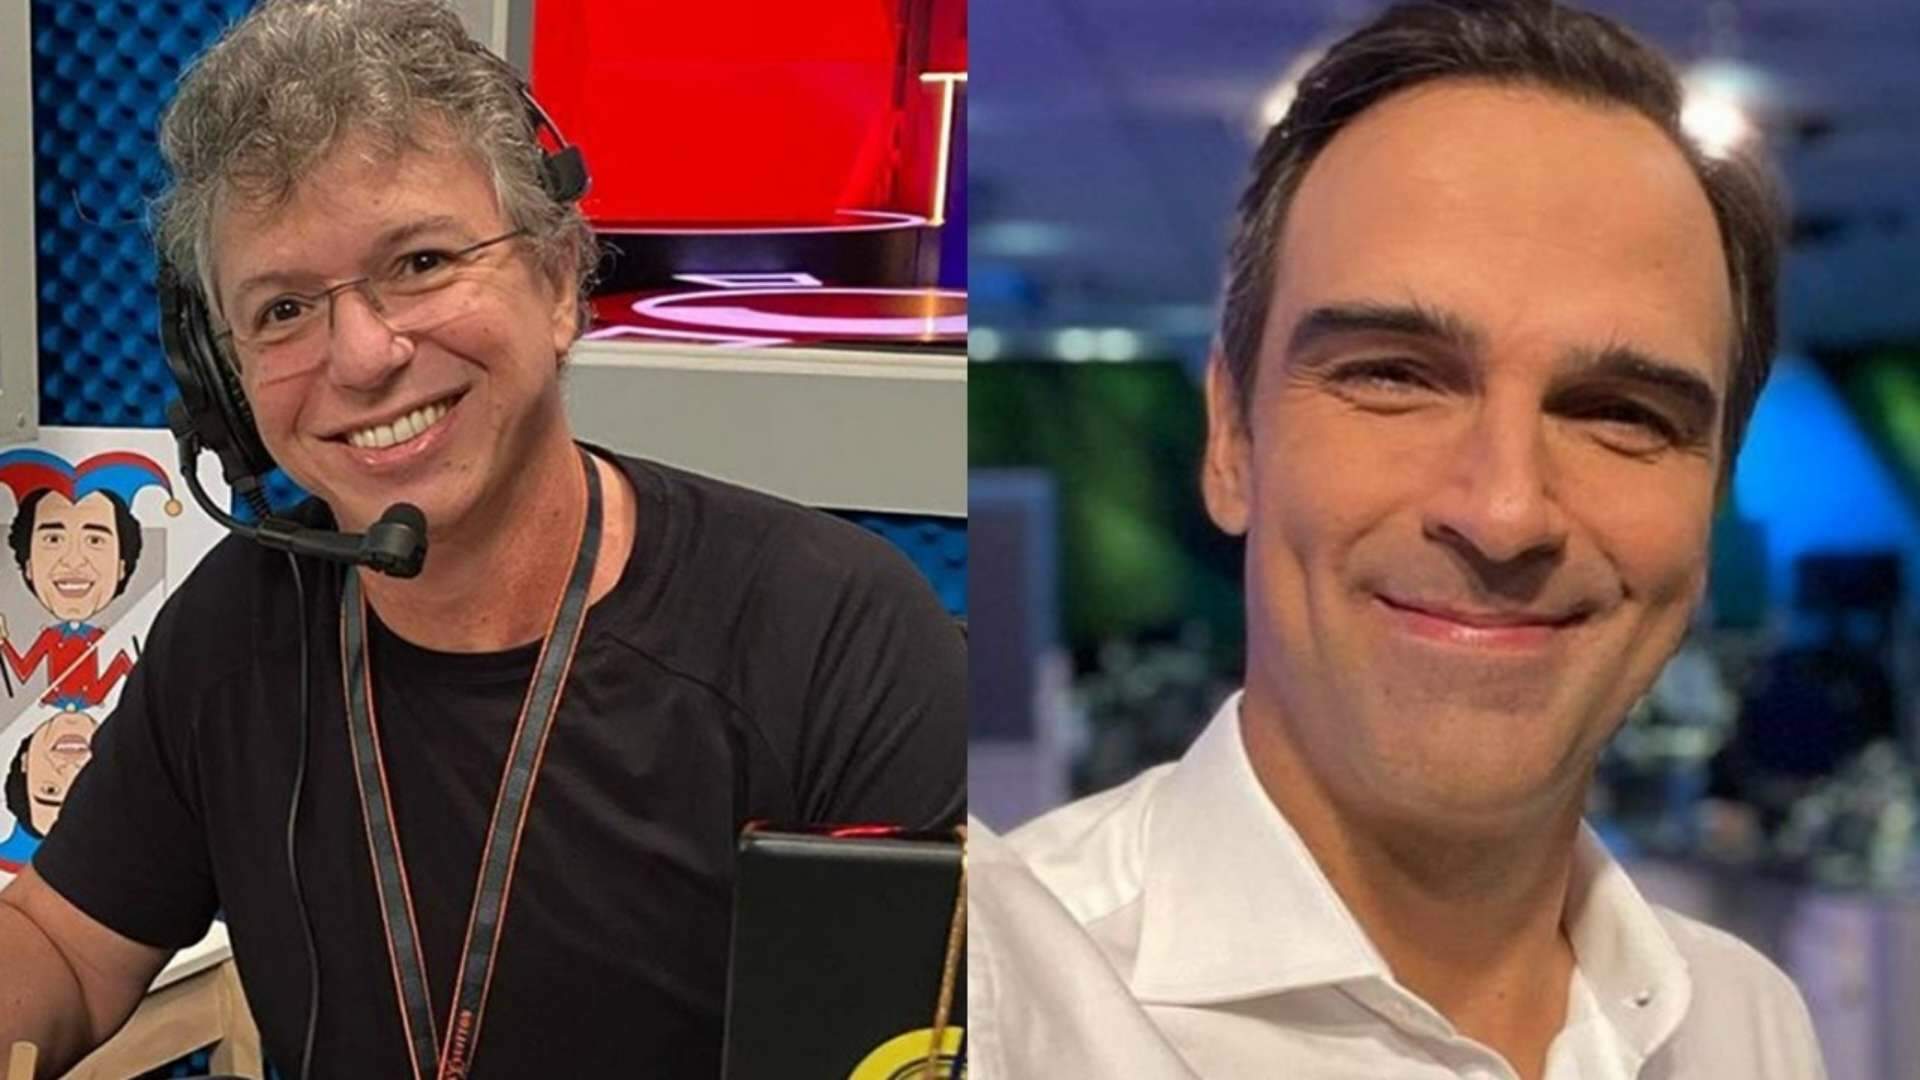 Boninho posa ao lado de Tadeu Schmidt, faz revelação inusitada e web reage: “Meu Deus!” - Metropolitana FM